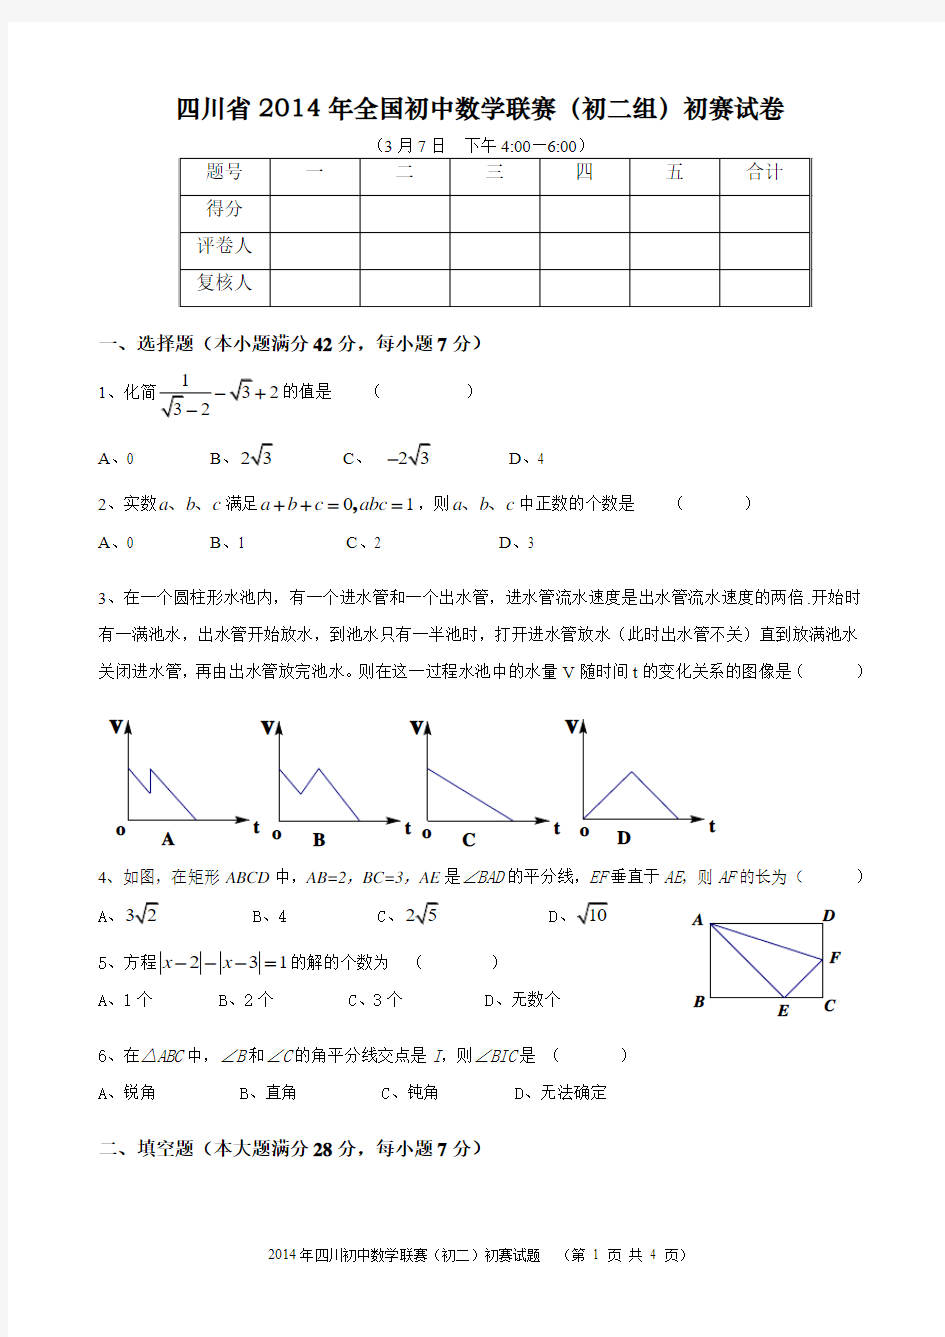 四川省2014年全国初中数学联赛(初二组)初赛试卷